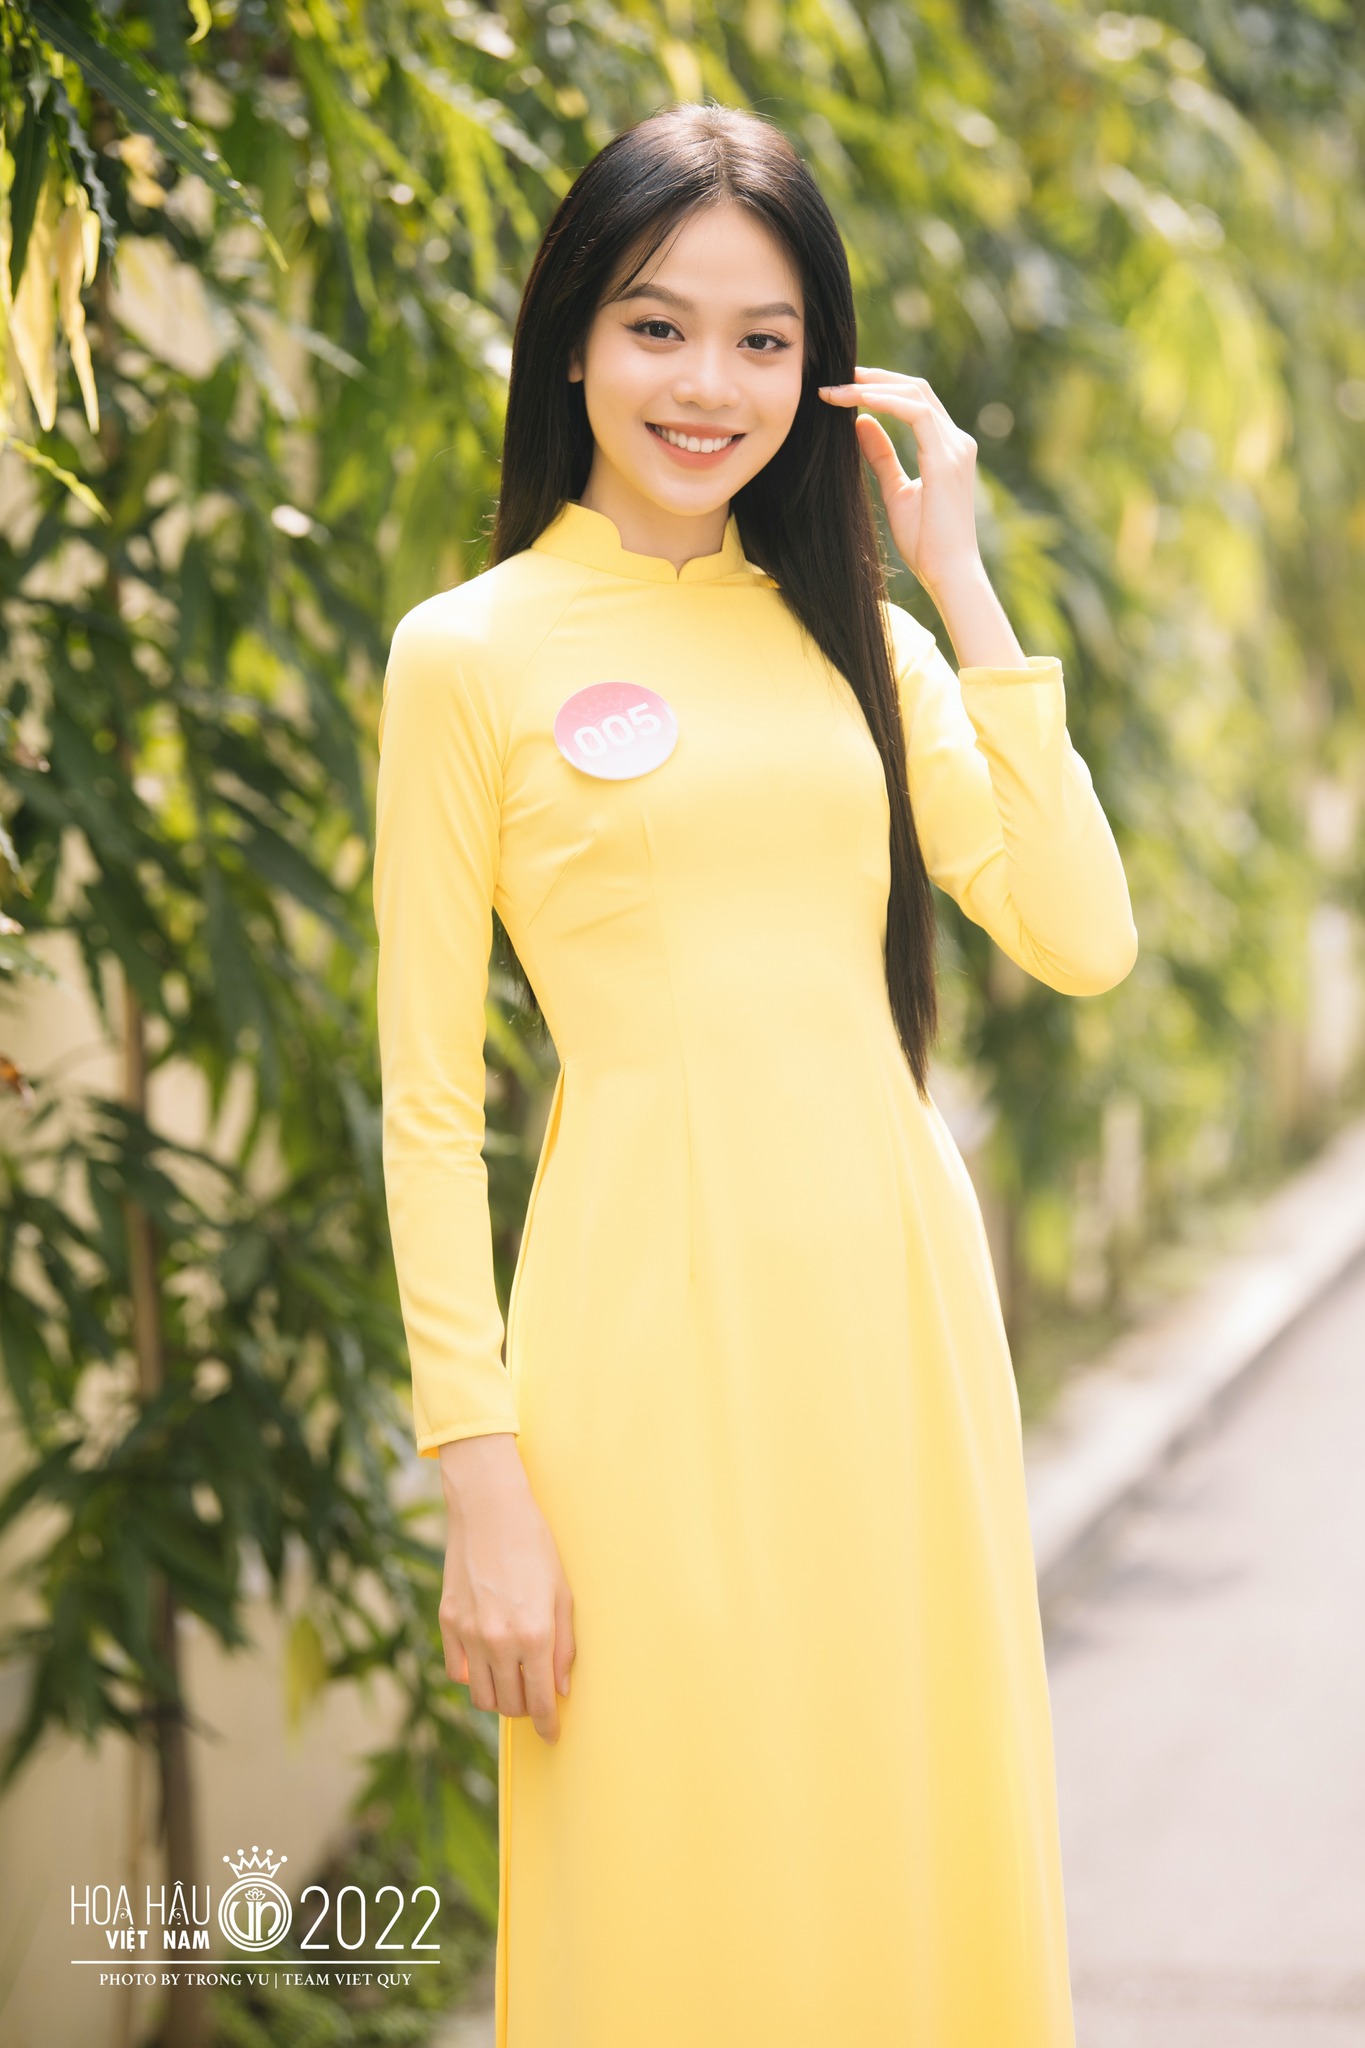 Tân hoa hậu Việt Nam 2022: Cao 1m75, học giỏi, từng có thời gian quy y - 6